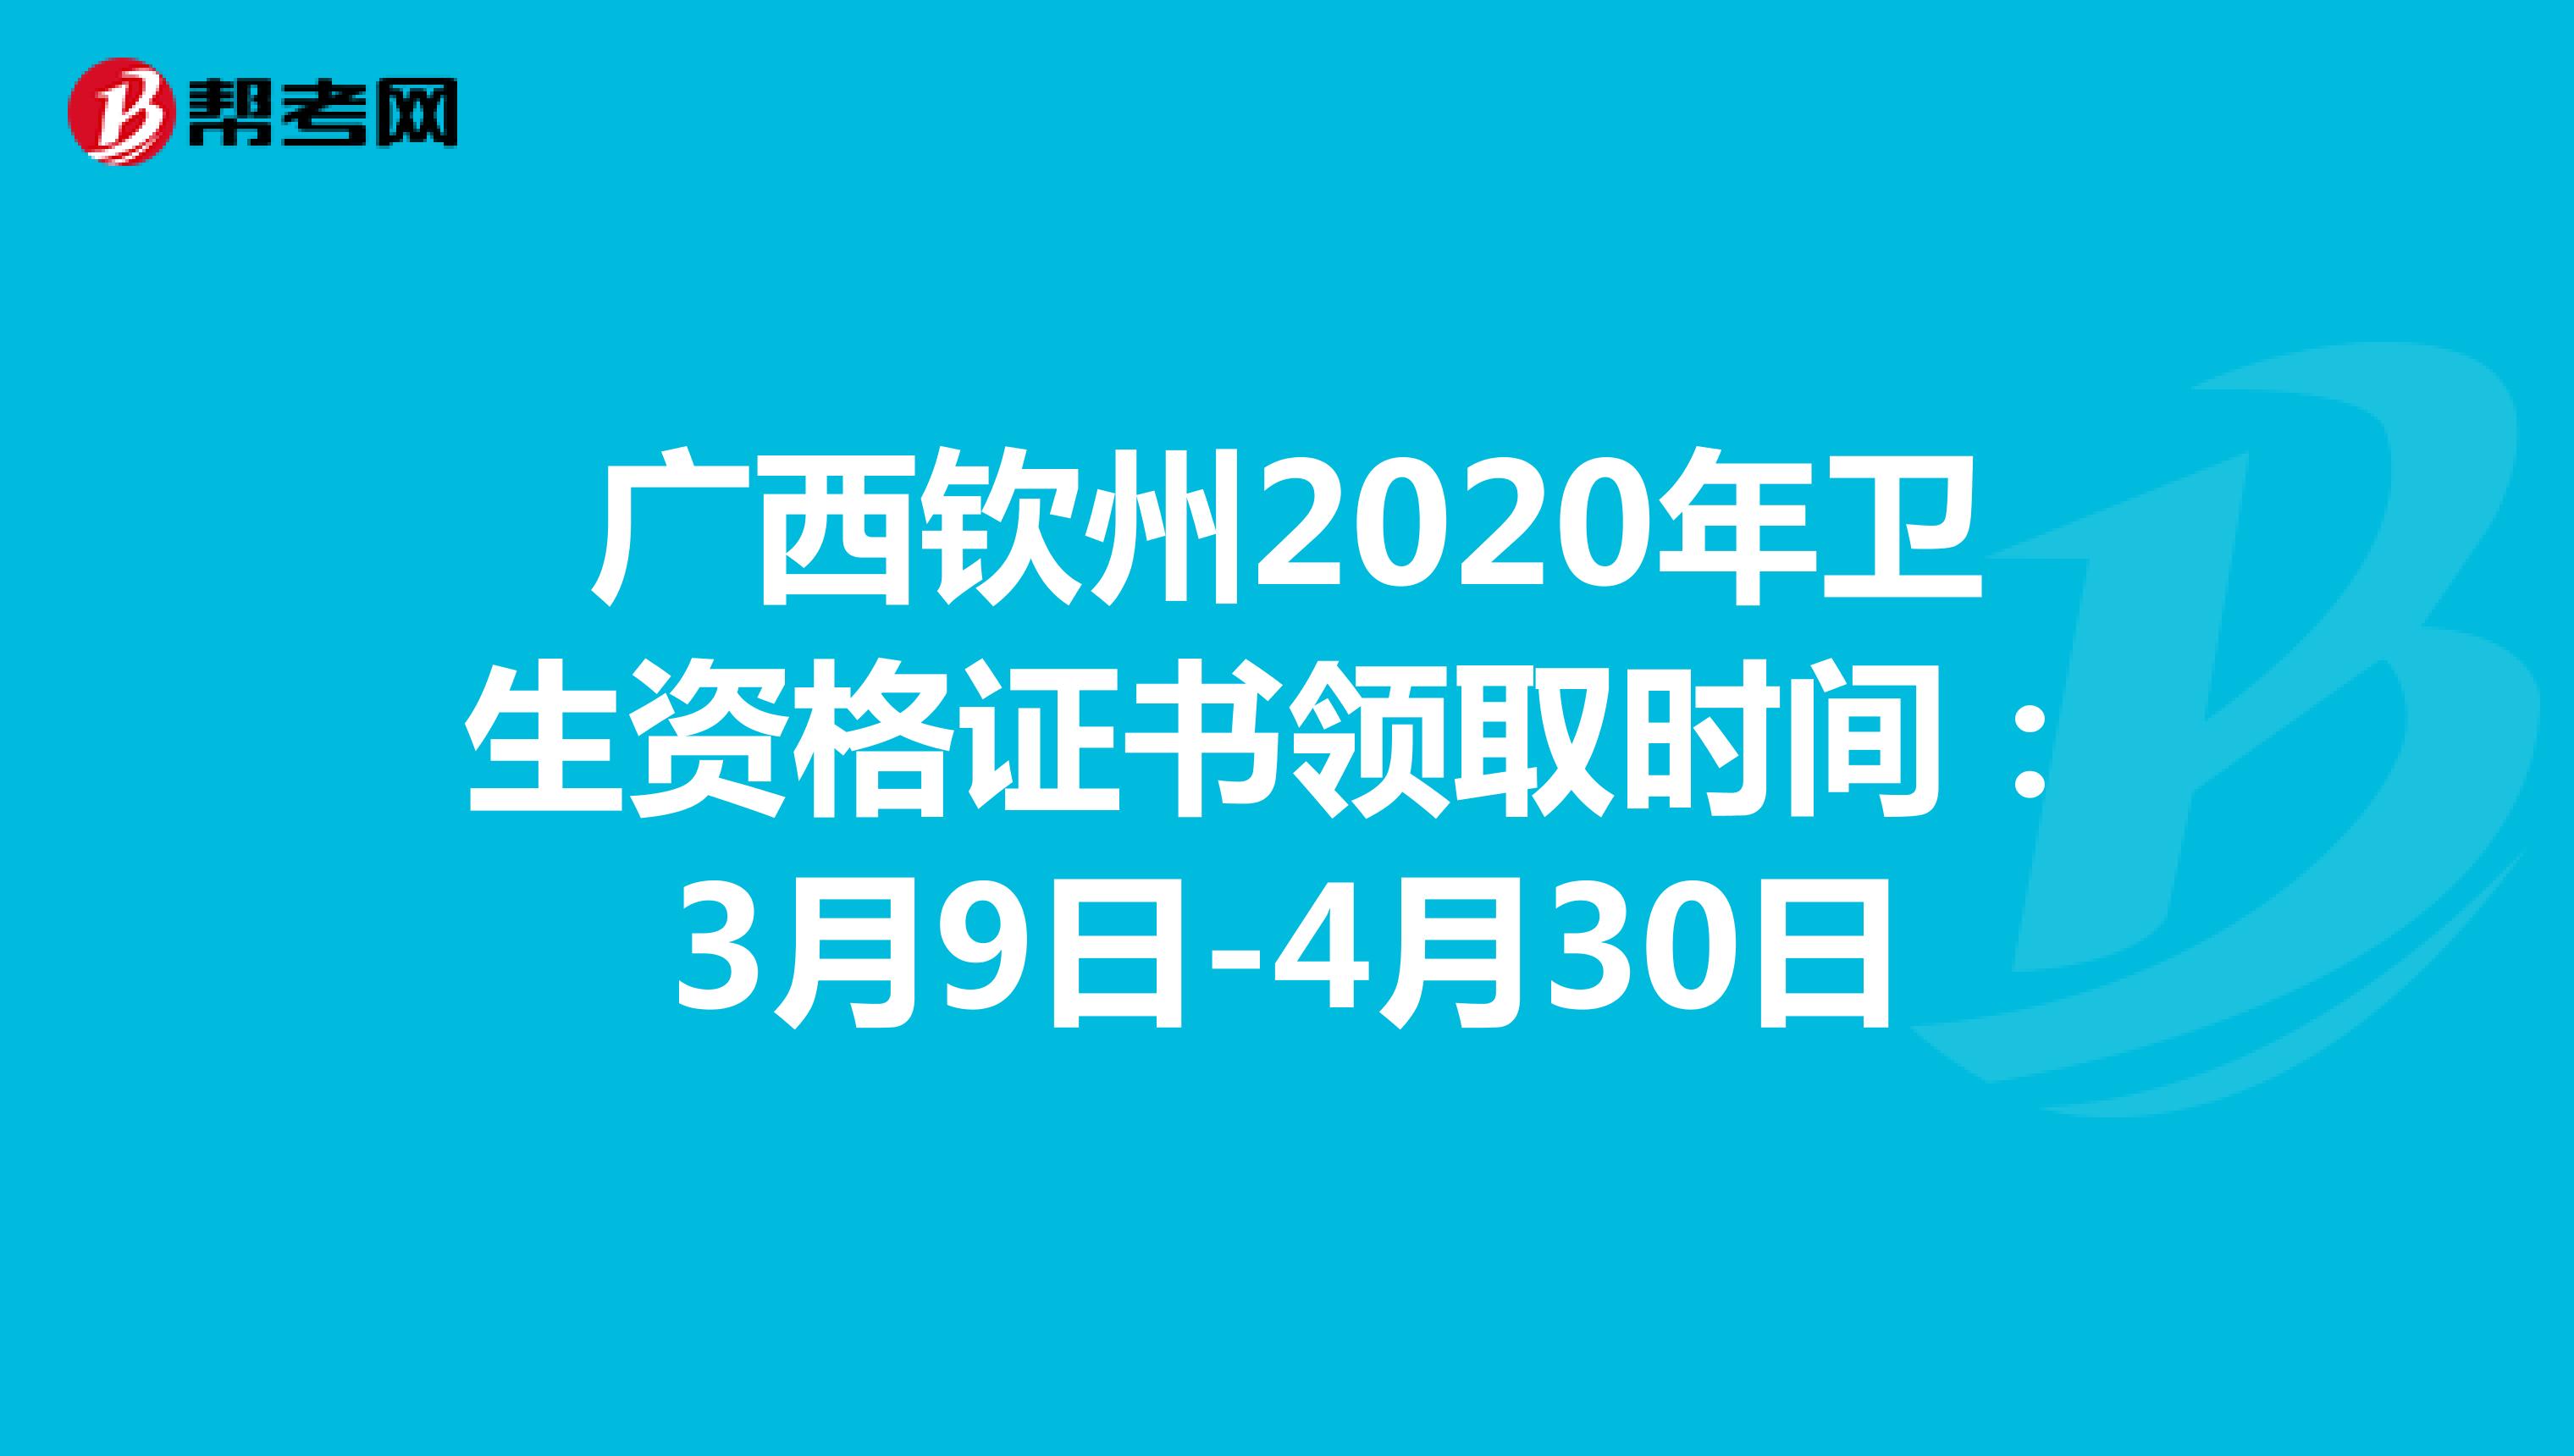 广西钦州2020年卫生资格证书领取时间：3月9日-4月30日